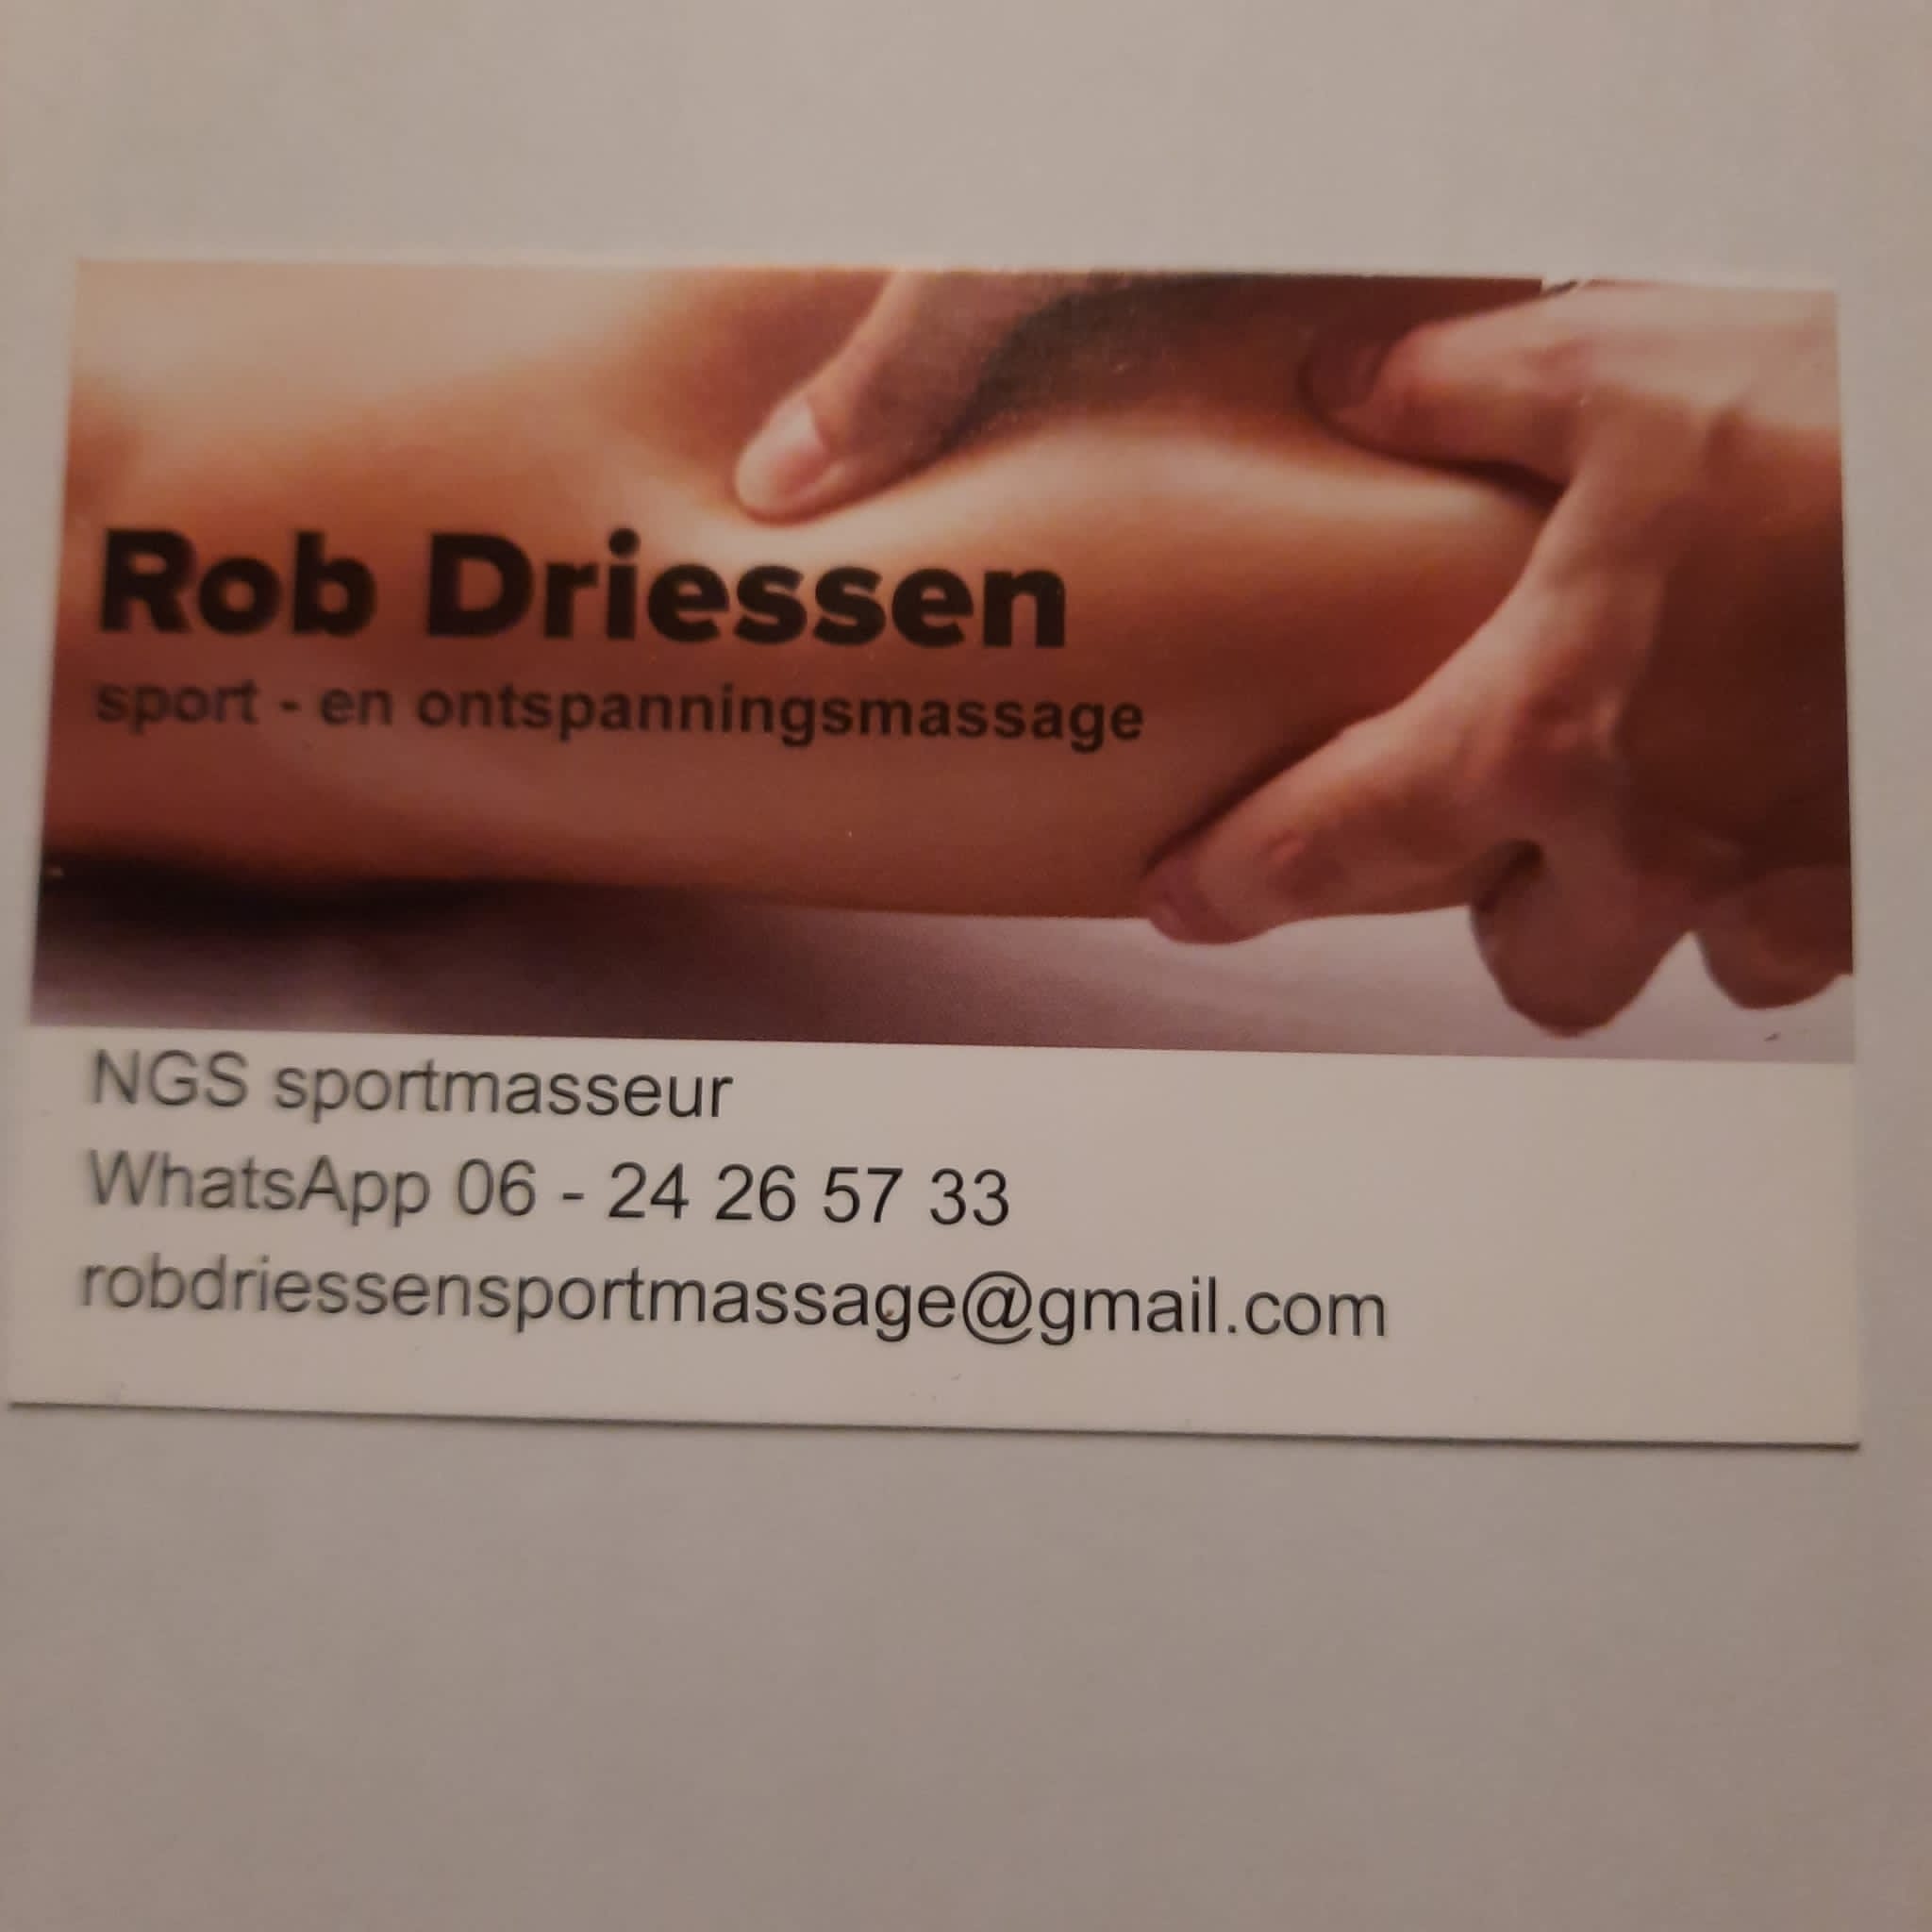 Sportmassage Rob Driessen